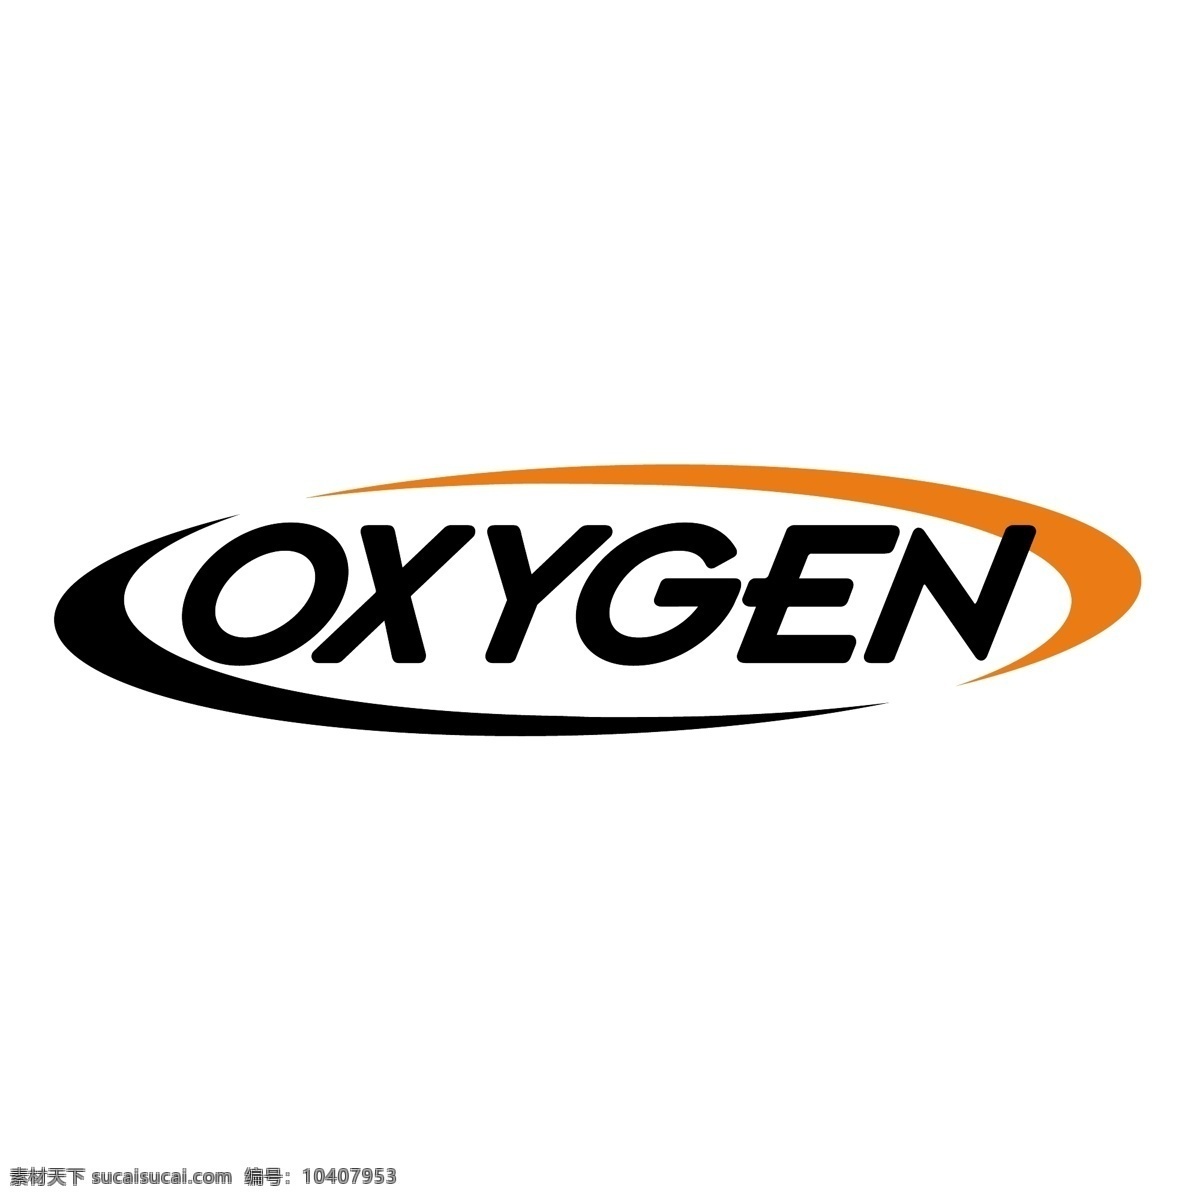 0氧气 氧 氧气 氧分子 自由向量 向量氧标志 载体 氧的标志 氧载体 logo 矢量 使用氧 储氧 矢量图 建筑家居